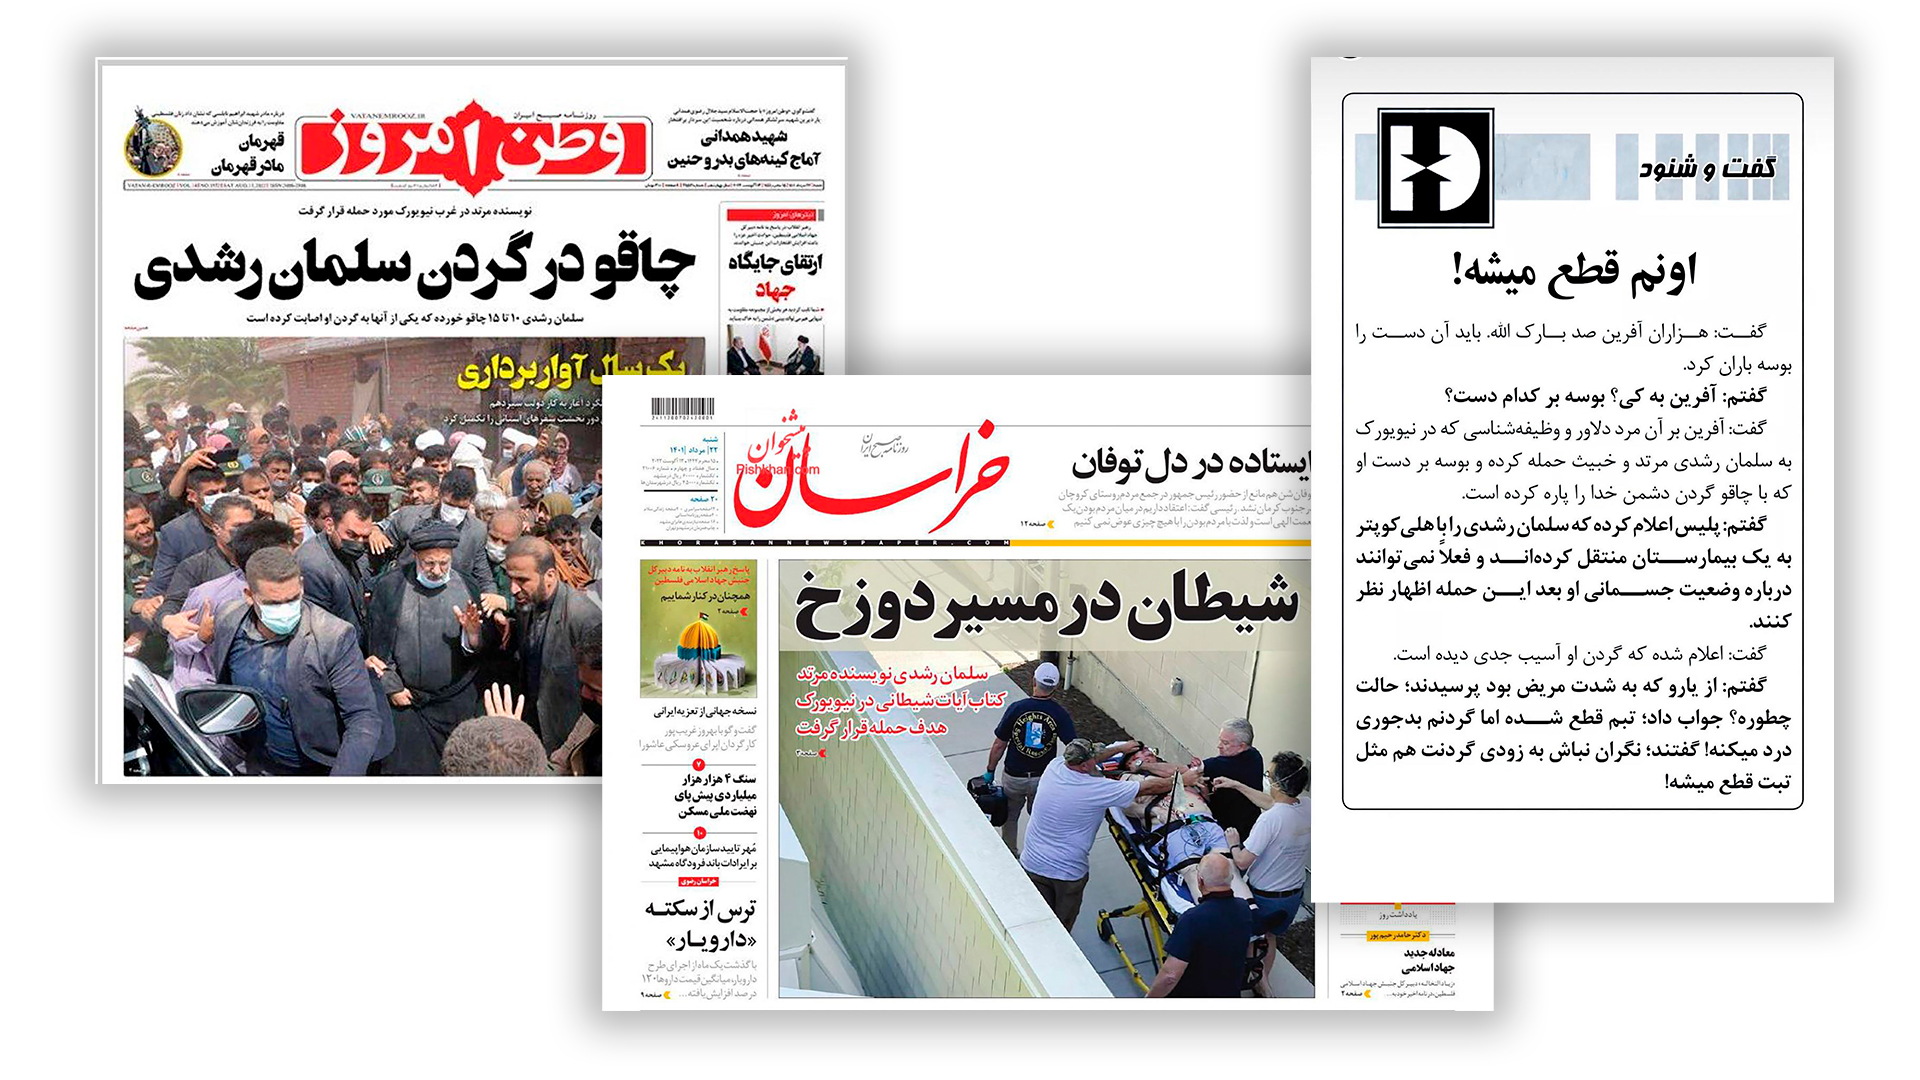 medios iraníes celebran el ataque a Salman Rushdie